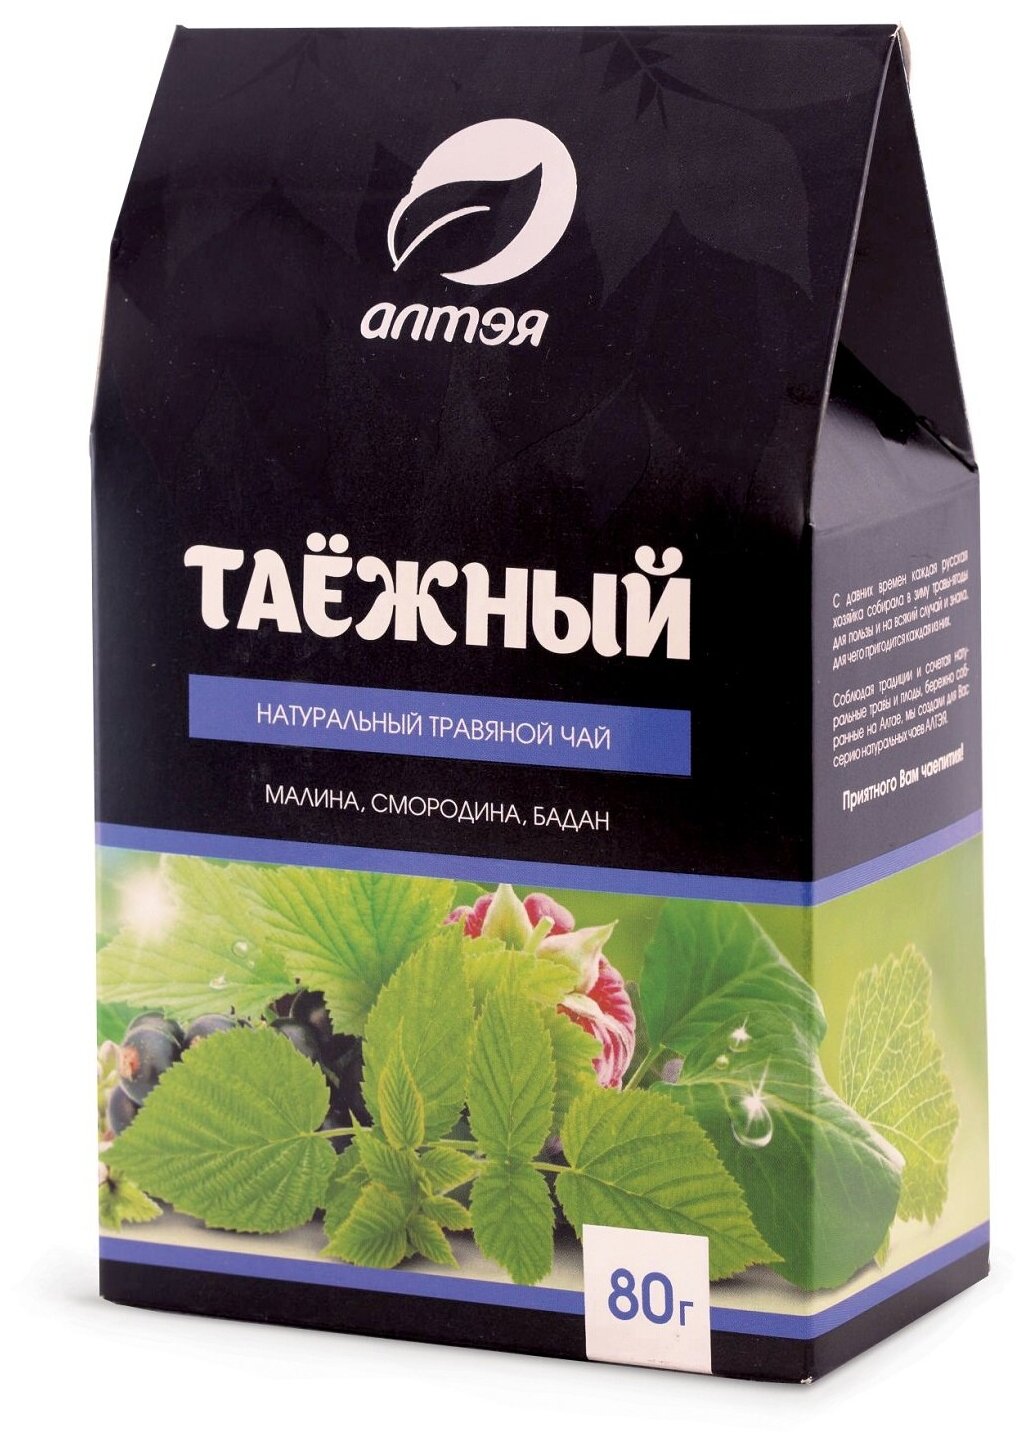 Натуральный травяной чай алтэя "Таежный", 80 г